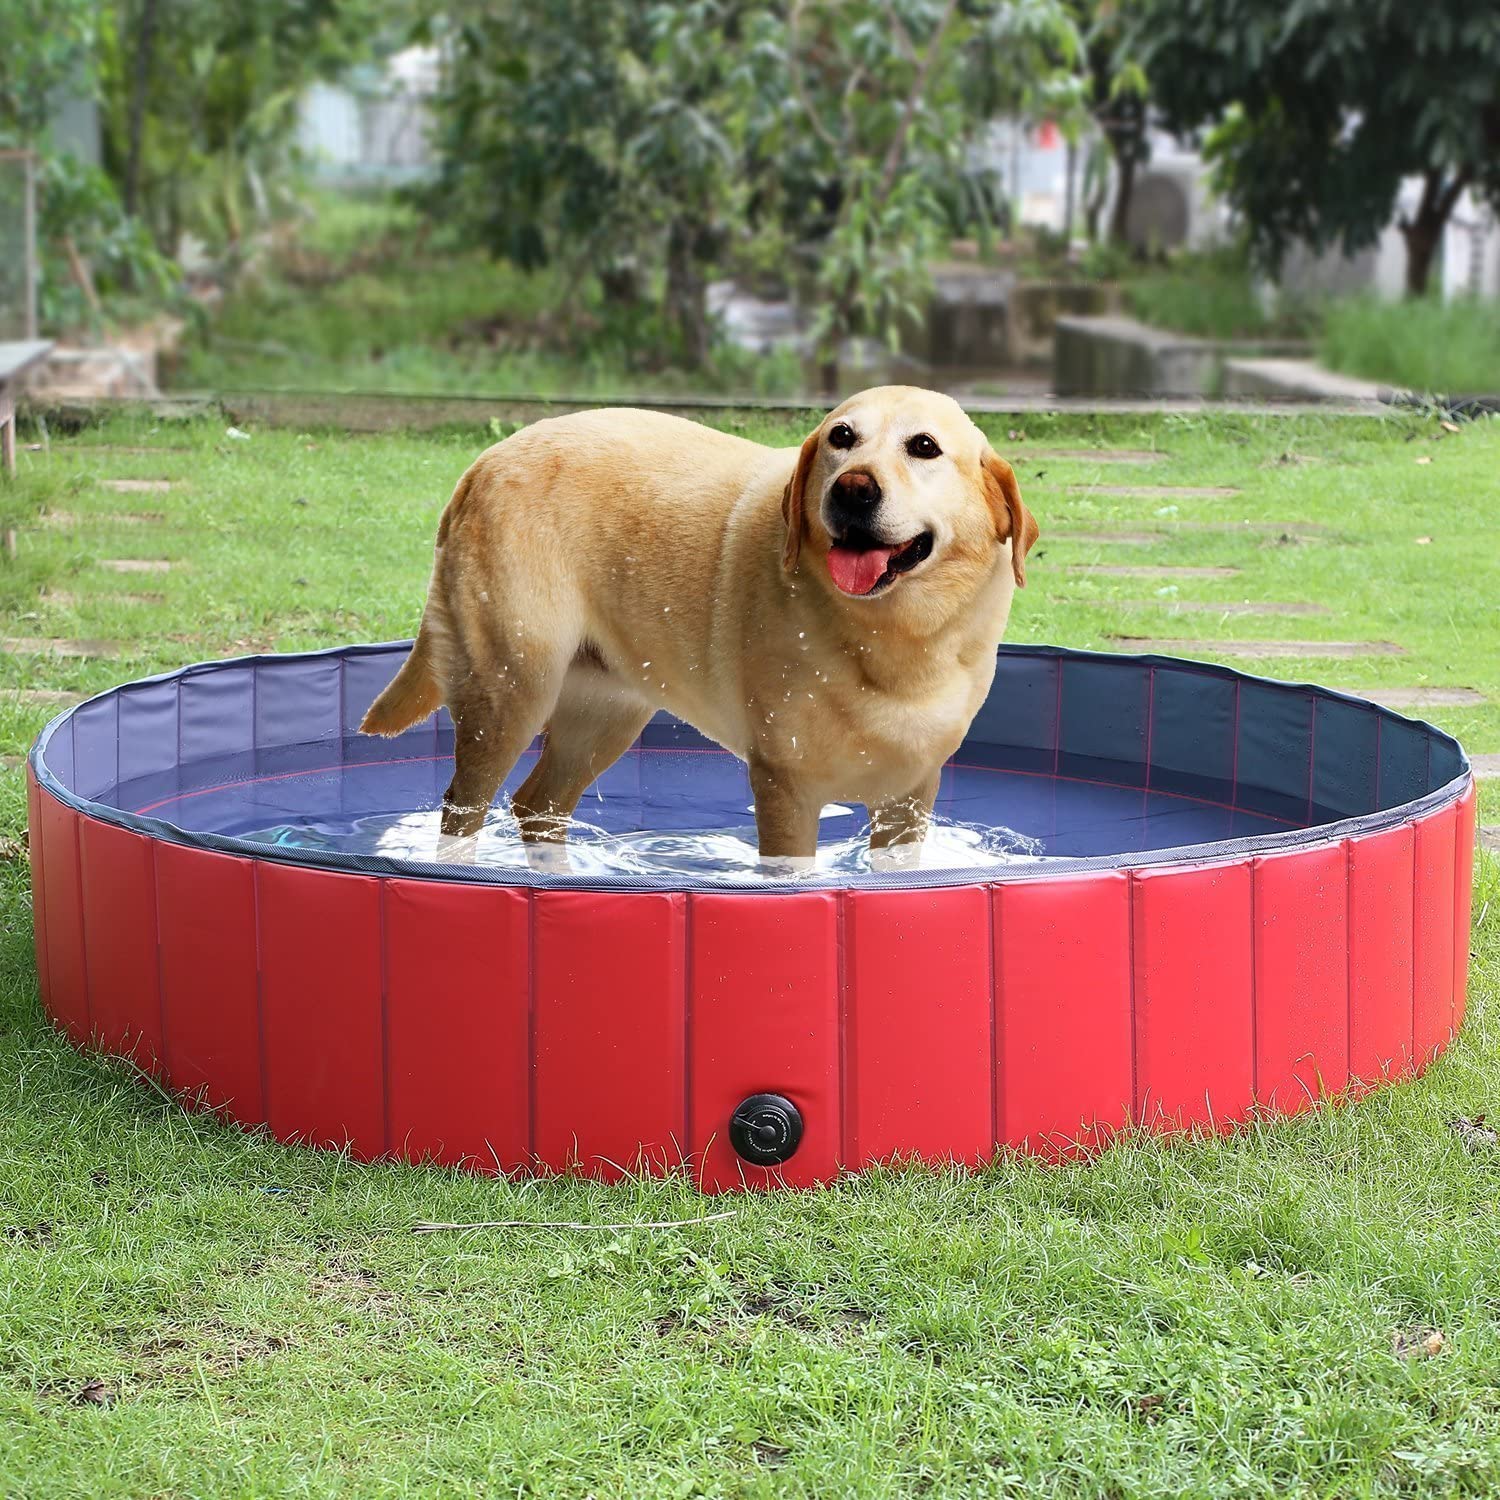  Femor Bañera Plegable de Mascotas Baño Portátil para Animales Piscina para Perros y Gatos Adecuado para Interior Exterior al Aire Libre Color Rojo (L/160 x 30cm) 